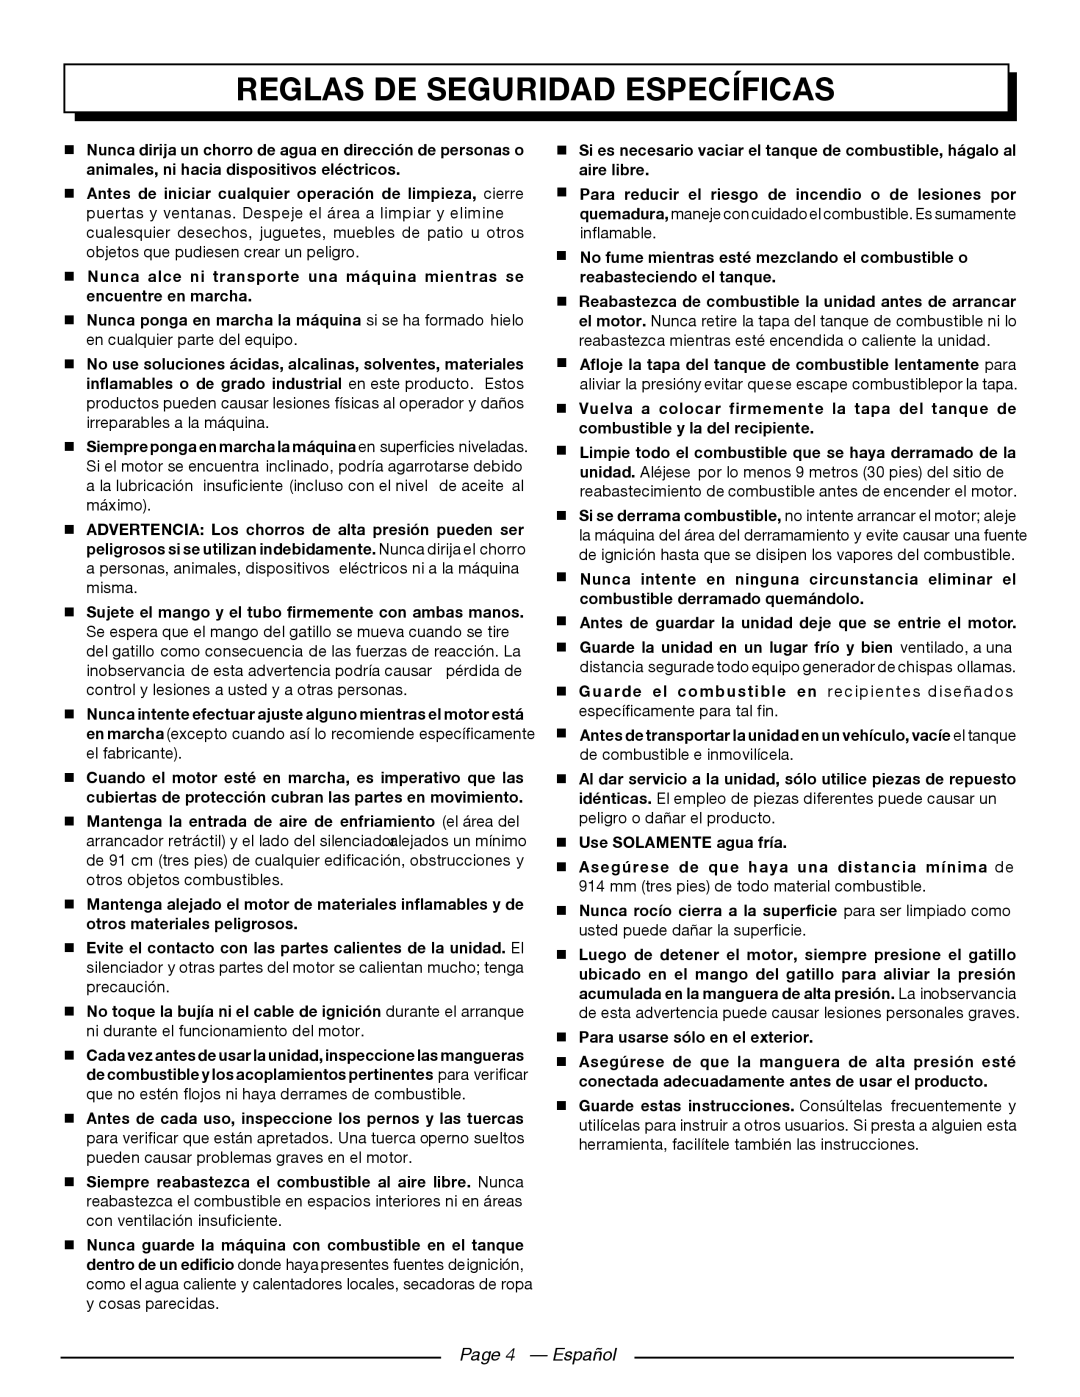 Homelite UT80911 Reglas De Seguridad Específicas, Page 4 - Español,  Sujete el mango y el tubo firmemente con ambas manos 